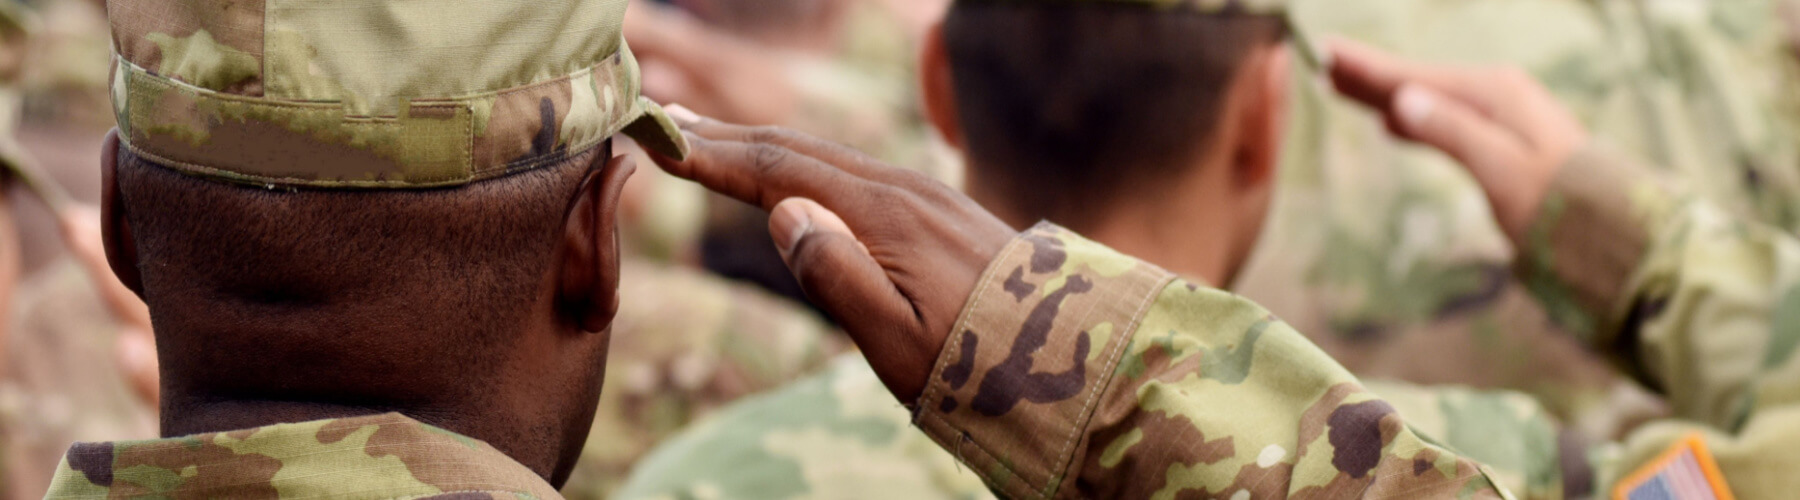 service members saluting